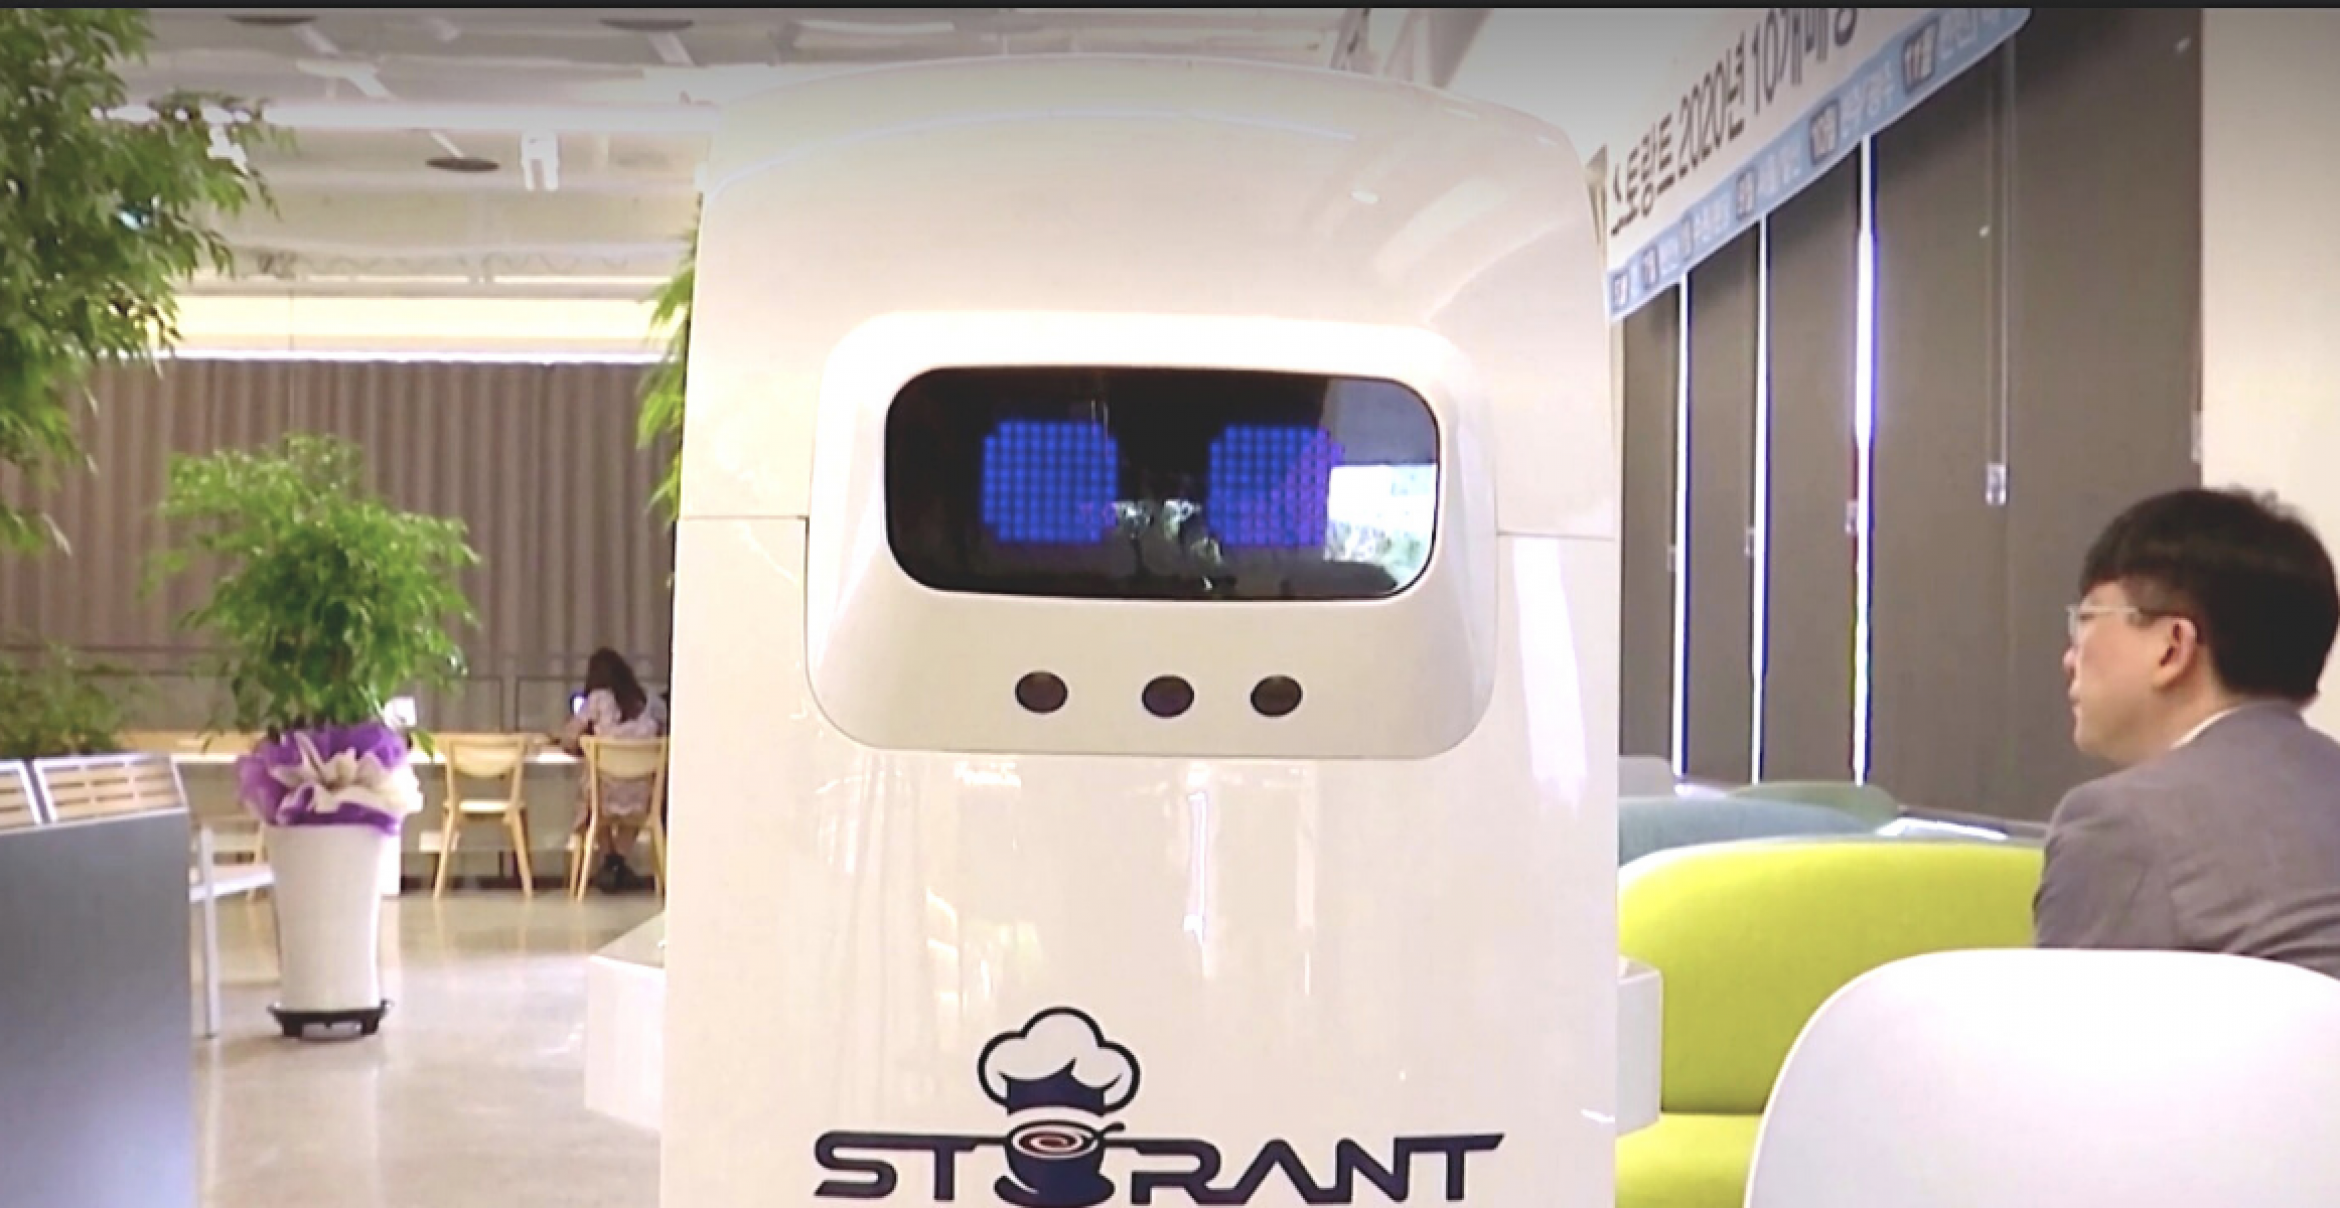 Komplett automatisiert: In Südkorea gibt es jetzt ein Roboter-Café